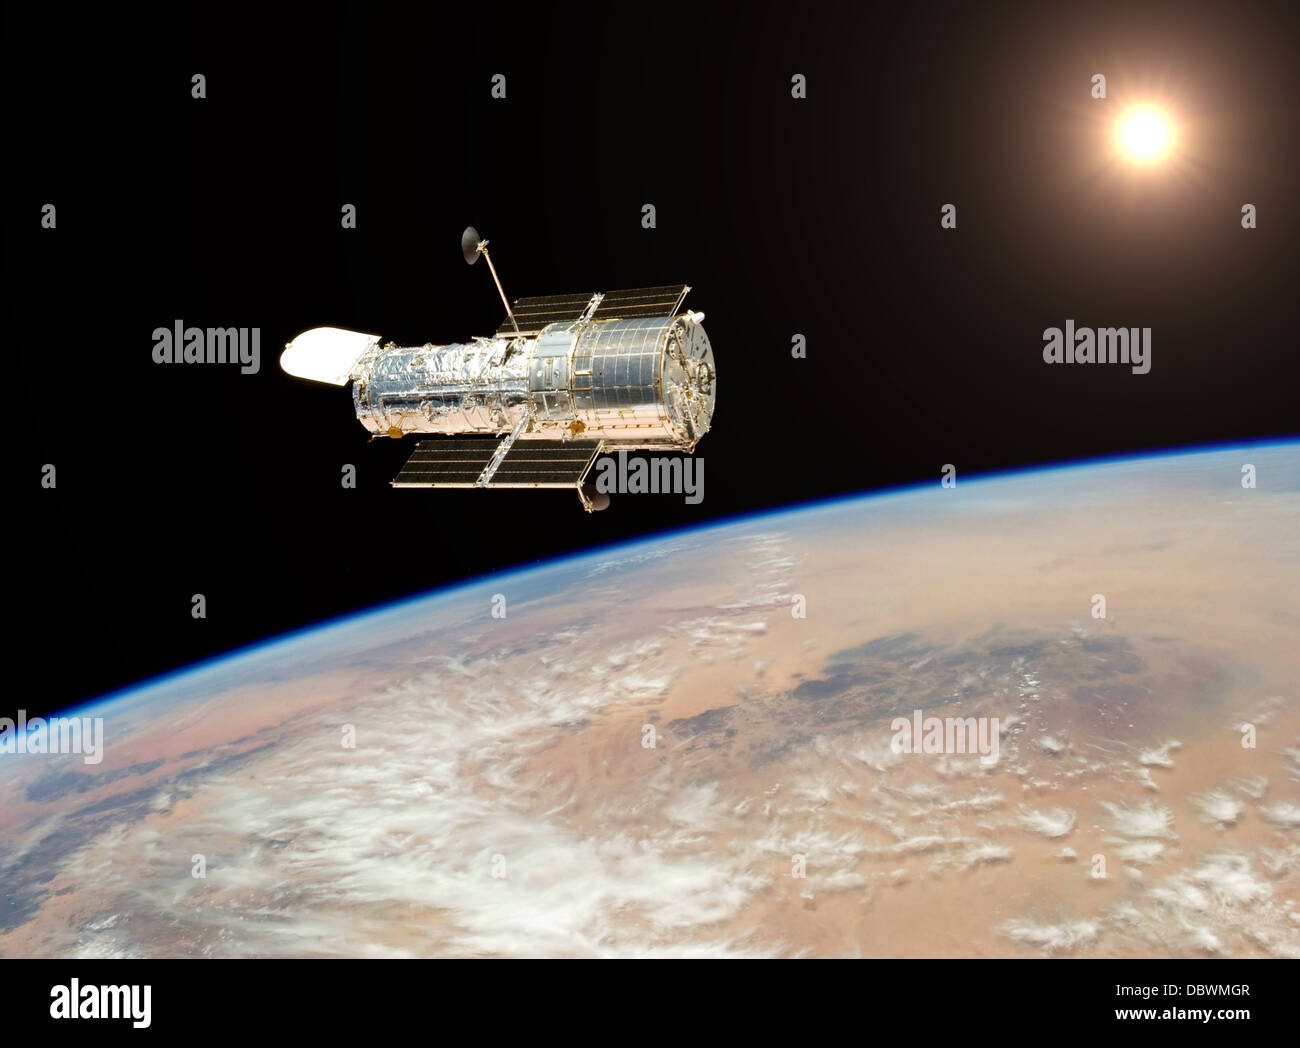 Hubble plane 350 milles au-dessus de la terre pour photographier l'exploration spatiale Banque D'Images